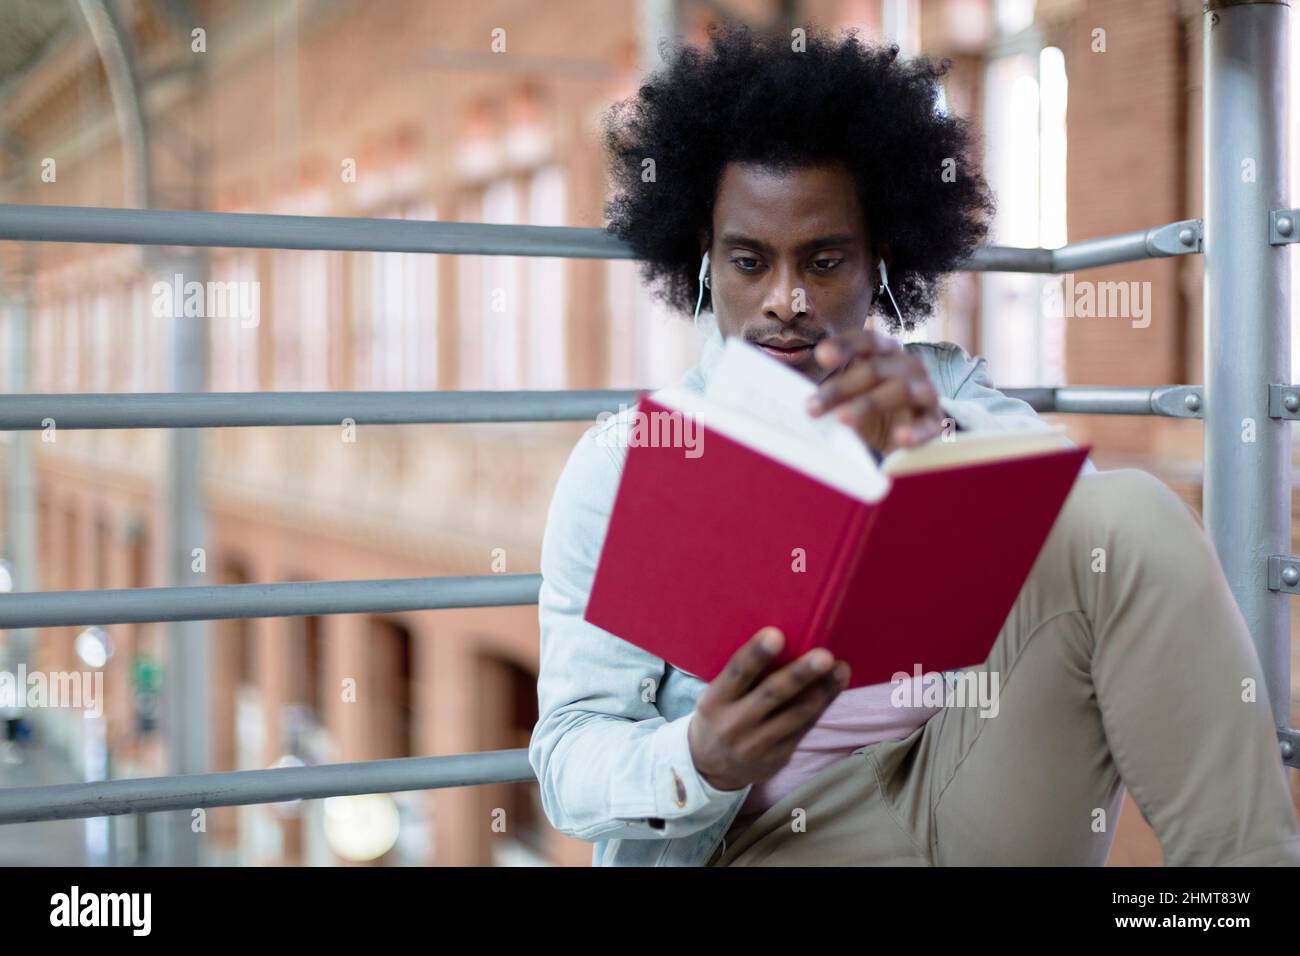 Nahaufnahme eines jungen afroamerikanischen Mannes, der an einem öffentlichen Ort ein Buch liest. Hobbys und gesunde Lebensstile. Platz für Text. Stockfoto